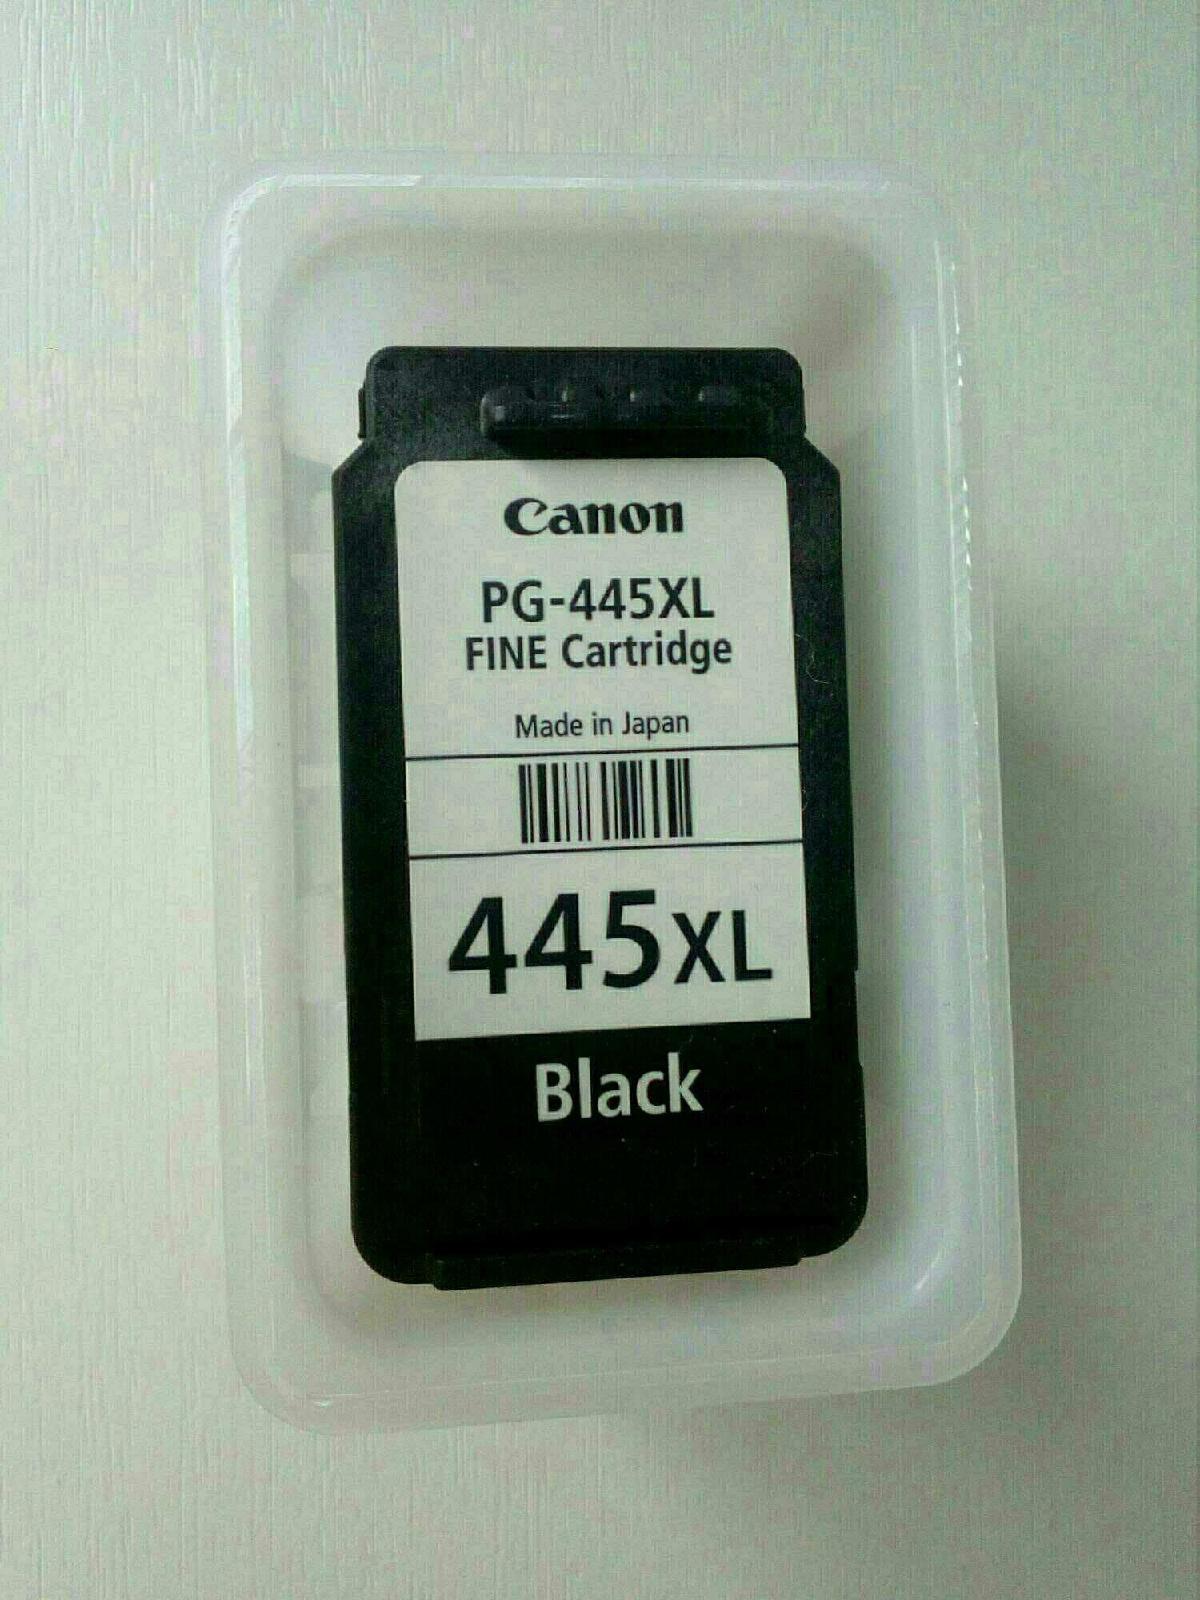 PG-445xl. Картридж Canon PG-445xl фото. Pg445 XL заправить самому. Как выглядит чип на картриджах 445 и 446.